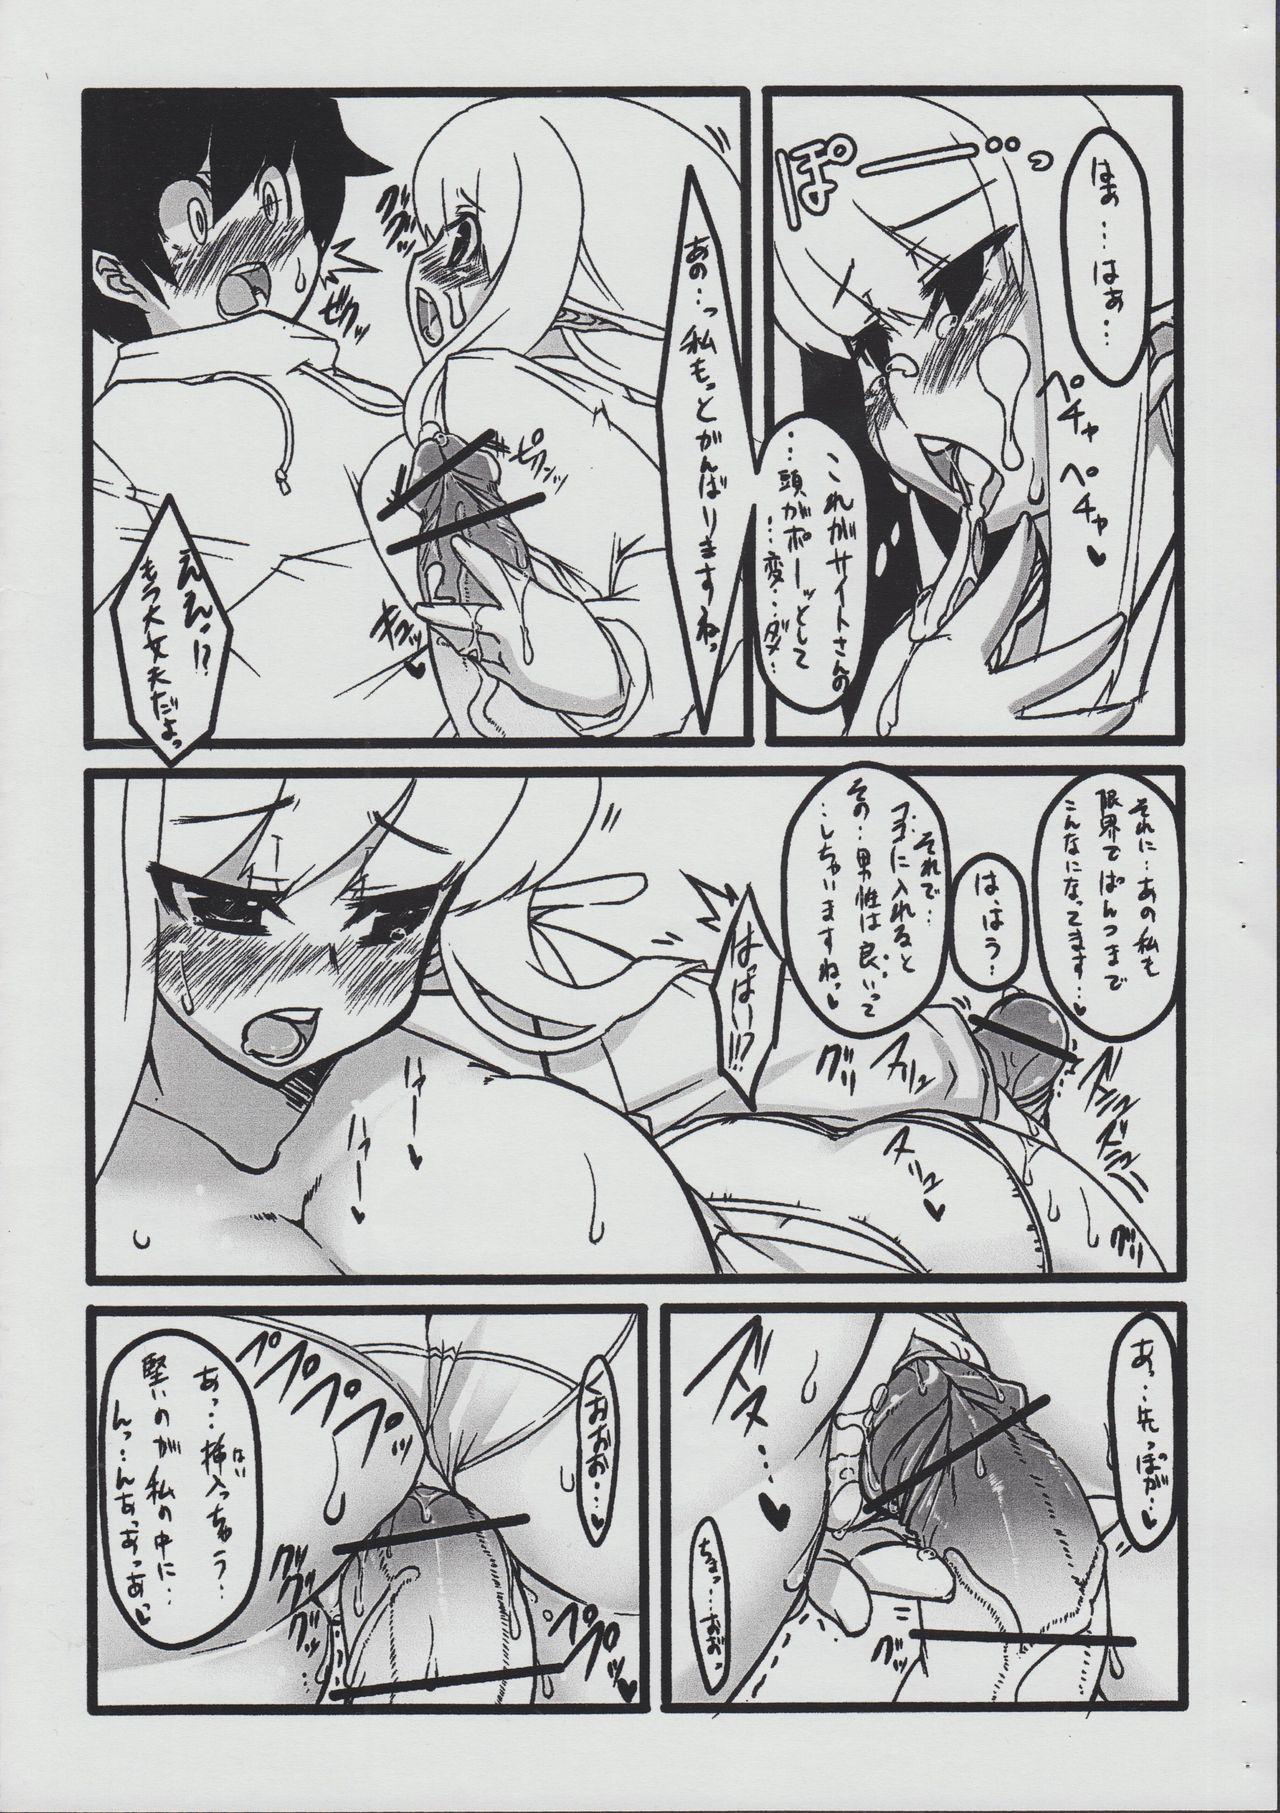 Punk Elfnyu - Zero no tsukaima Free Porn Hardcore - Page 8